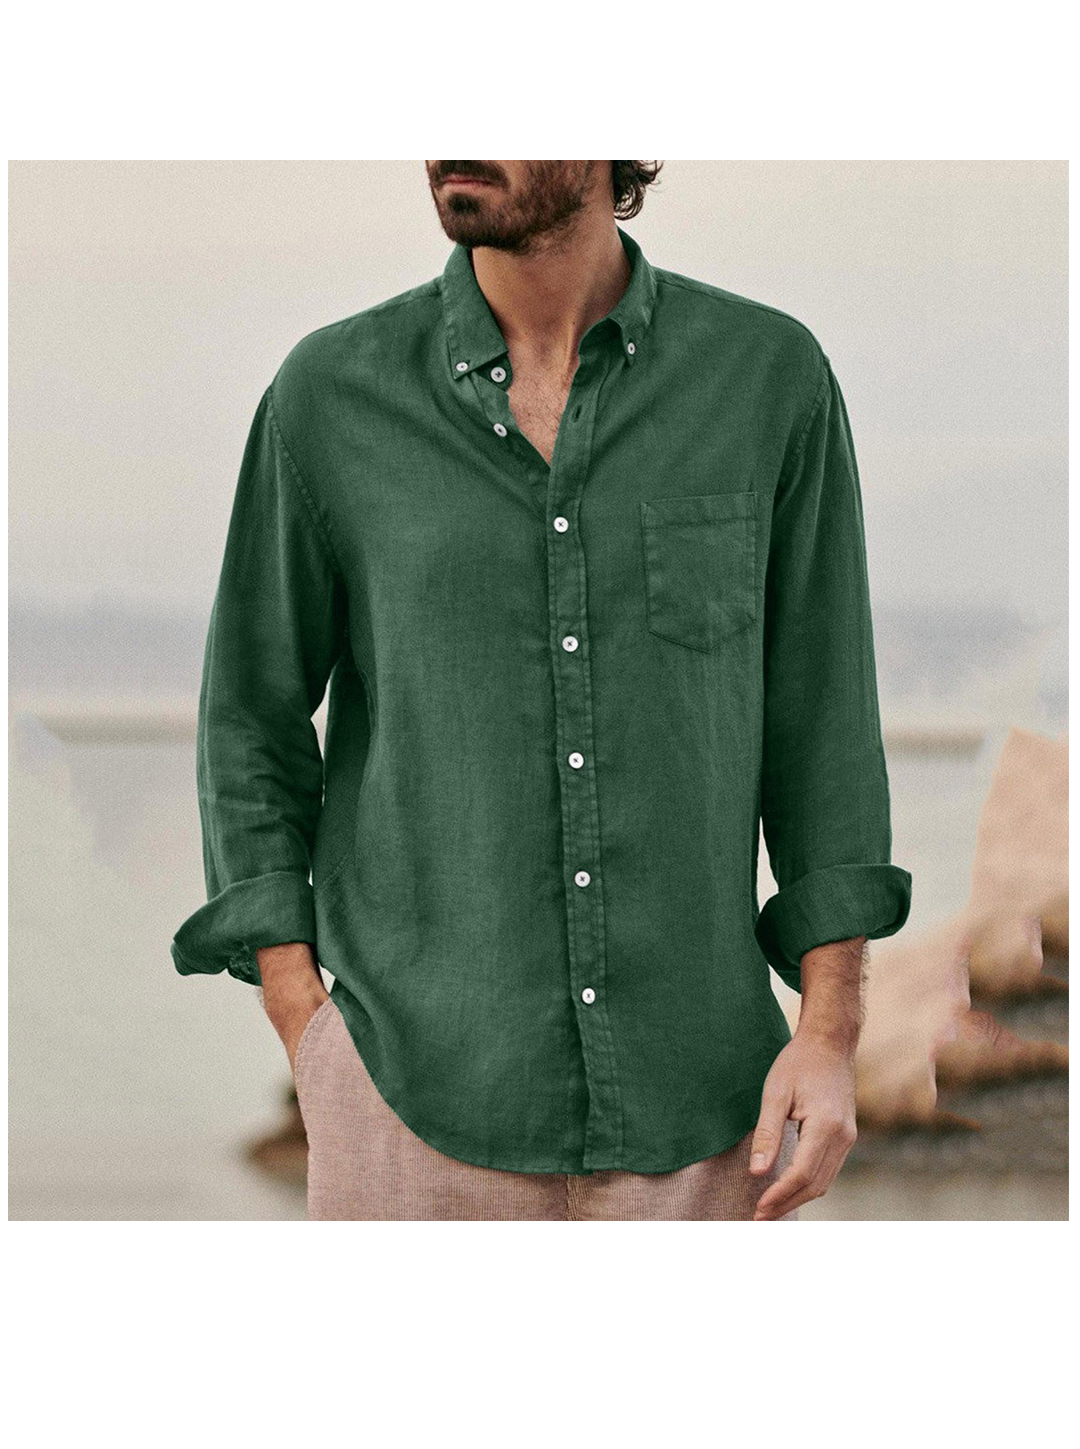 Men's Richard Solid Color Faxu Cotton Linen Shirt-poisonstreetwear.com